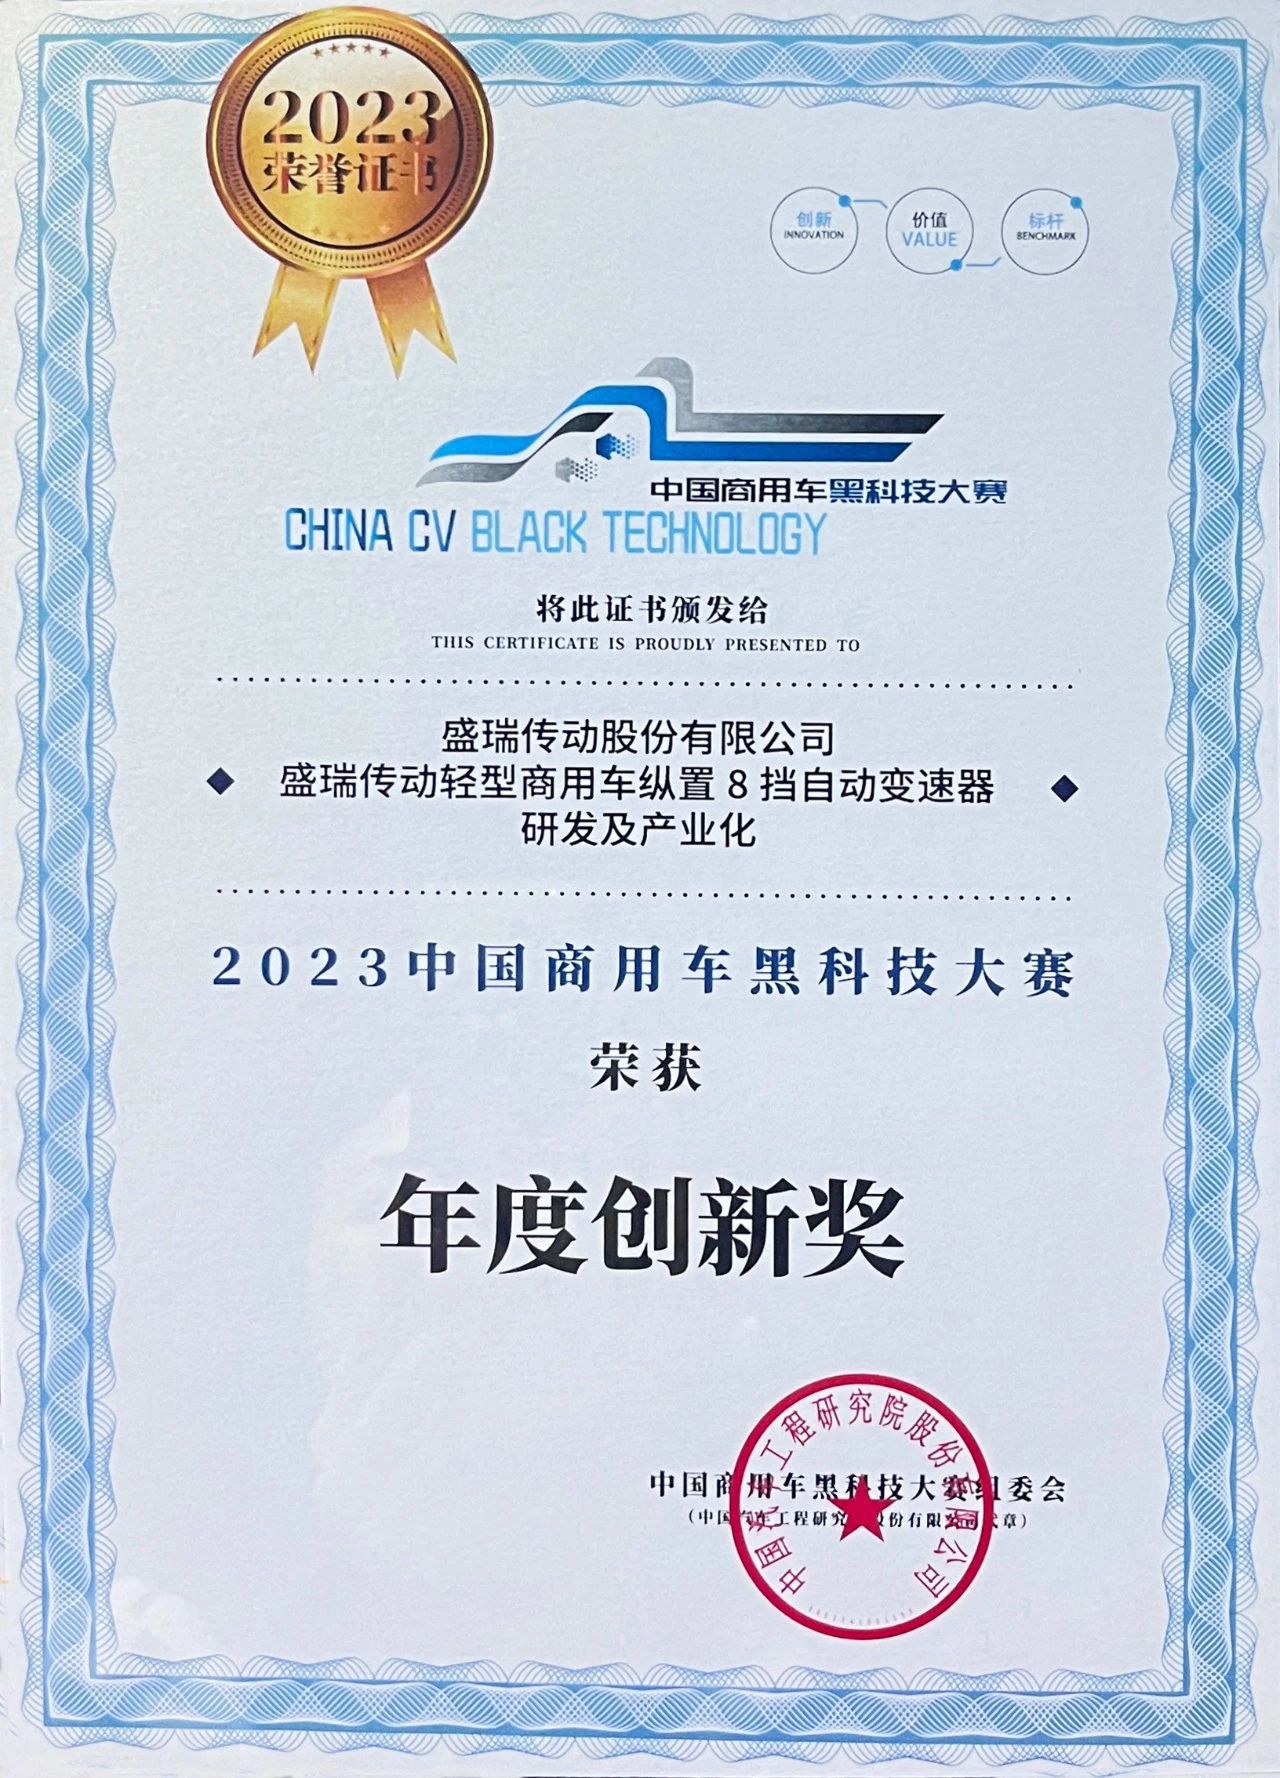 盛瑞传动荣获2023中国商用车黑科技大赛“年度创新奖”